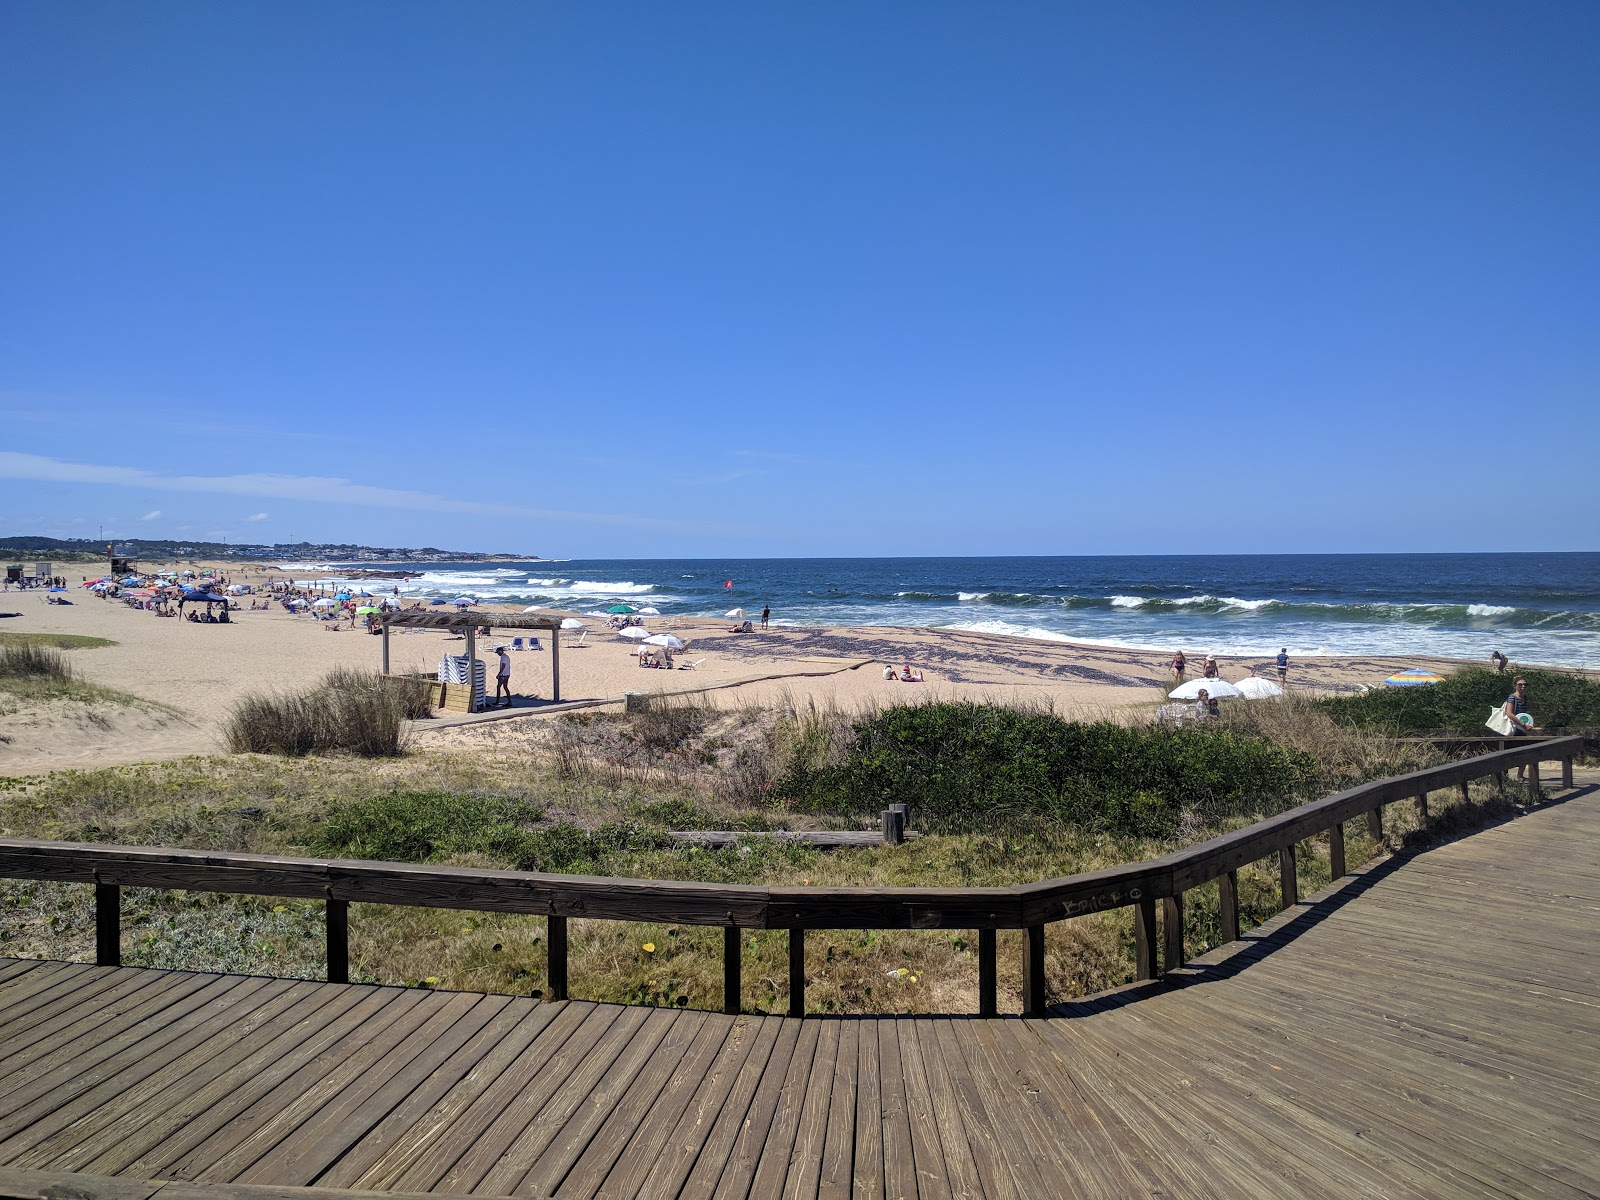 Montoya Beach'in fotoğrafı geniş plaj ile birlikte